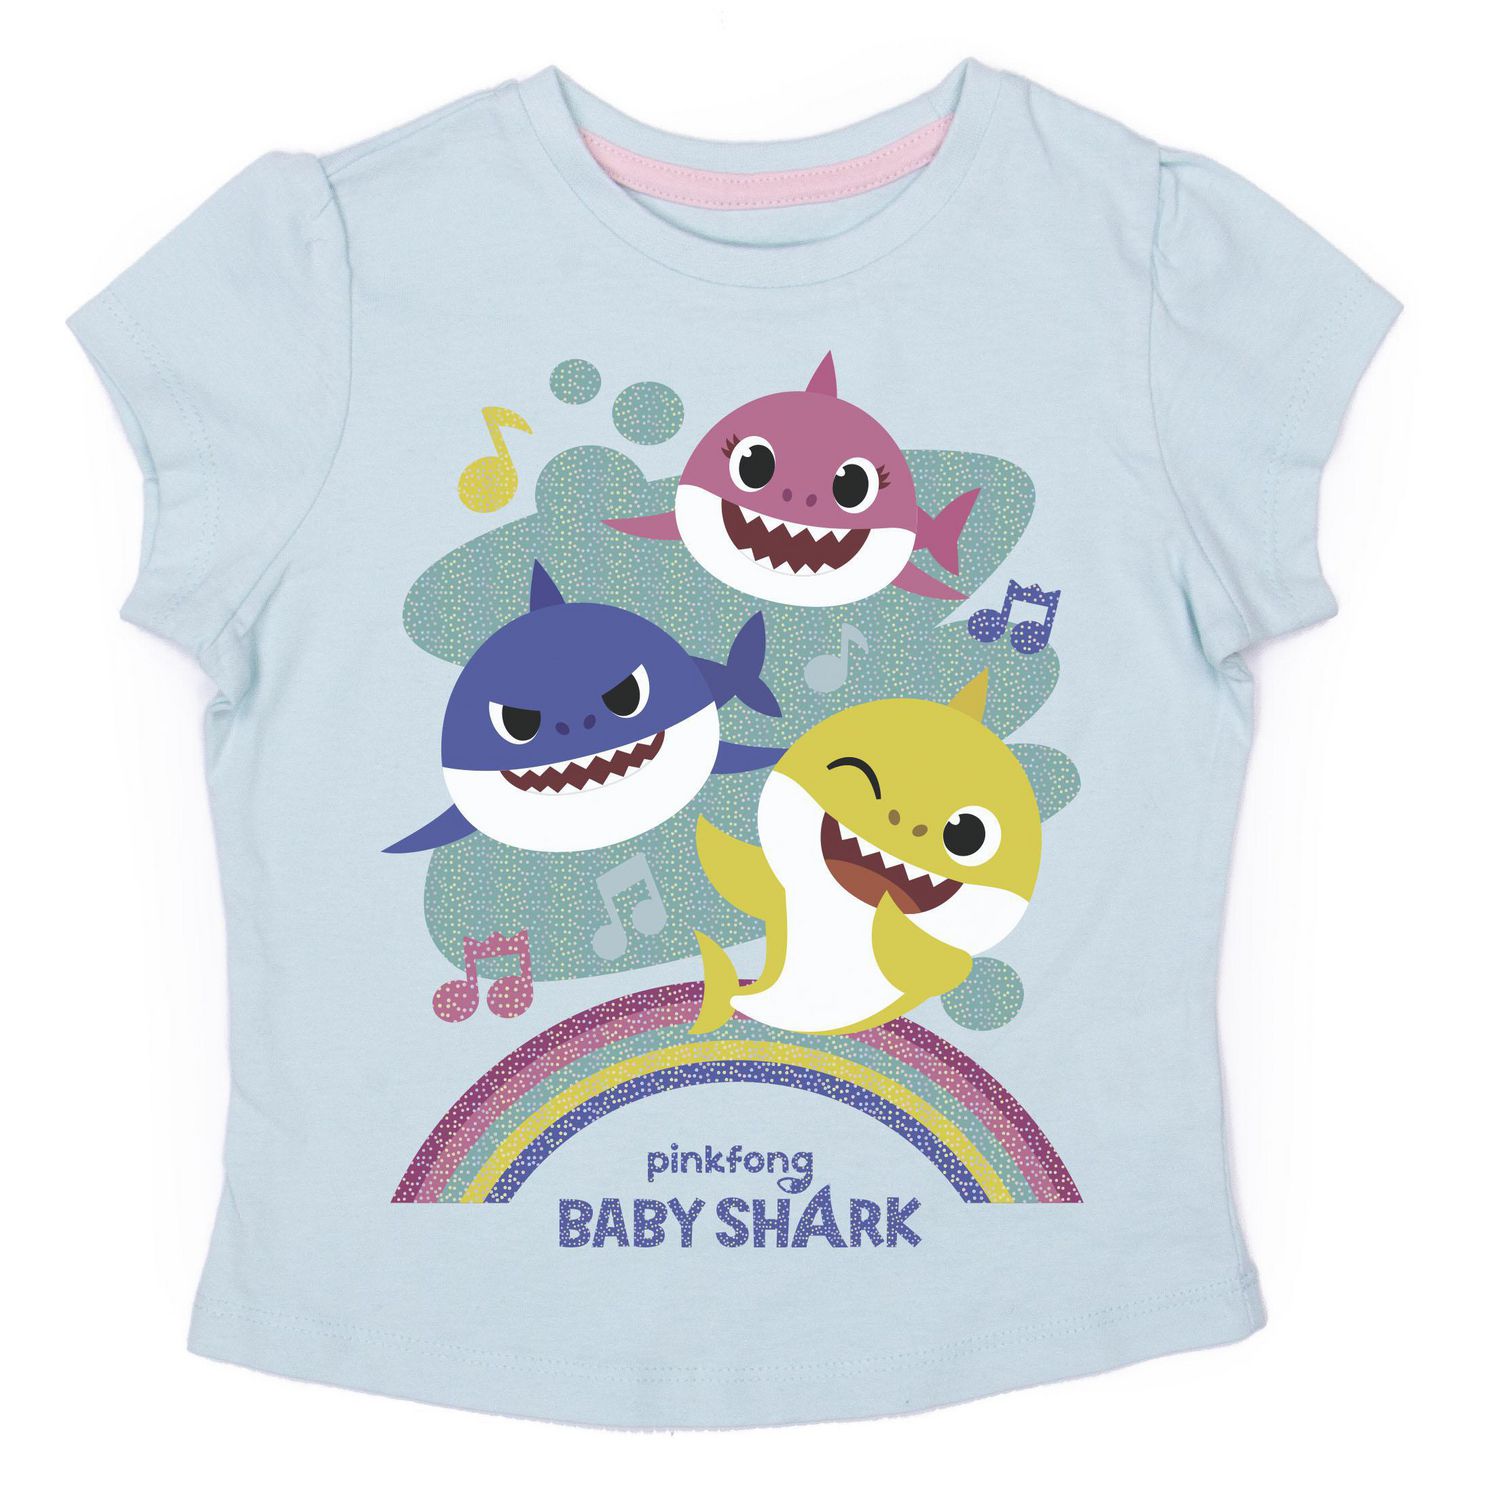 Pinkfong Baby Shark Girls 3 Pack Short Sleeve T-Shirts 